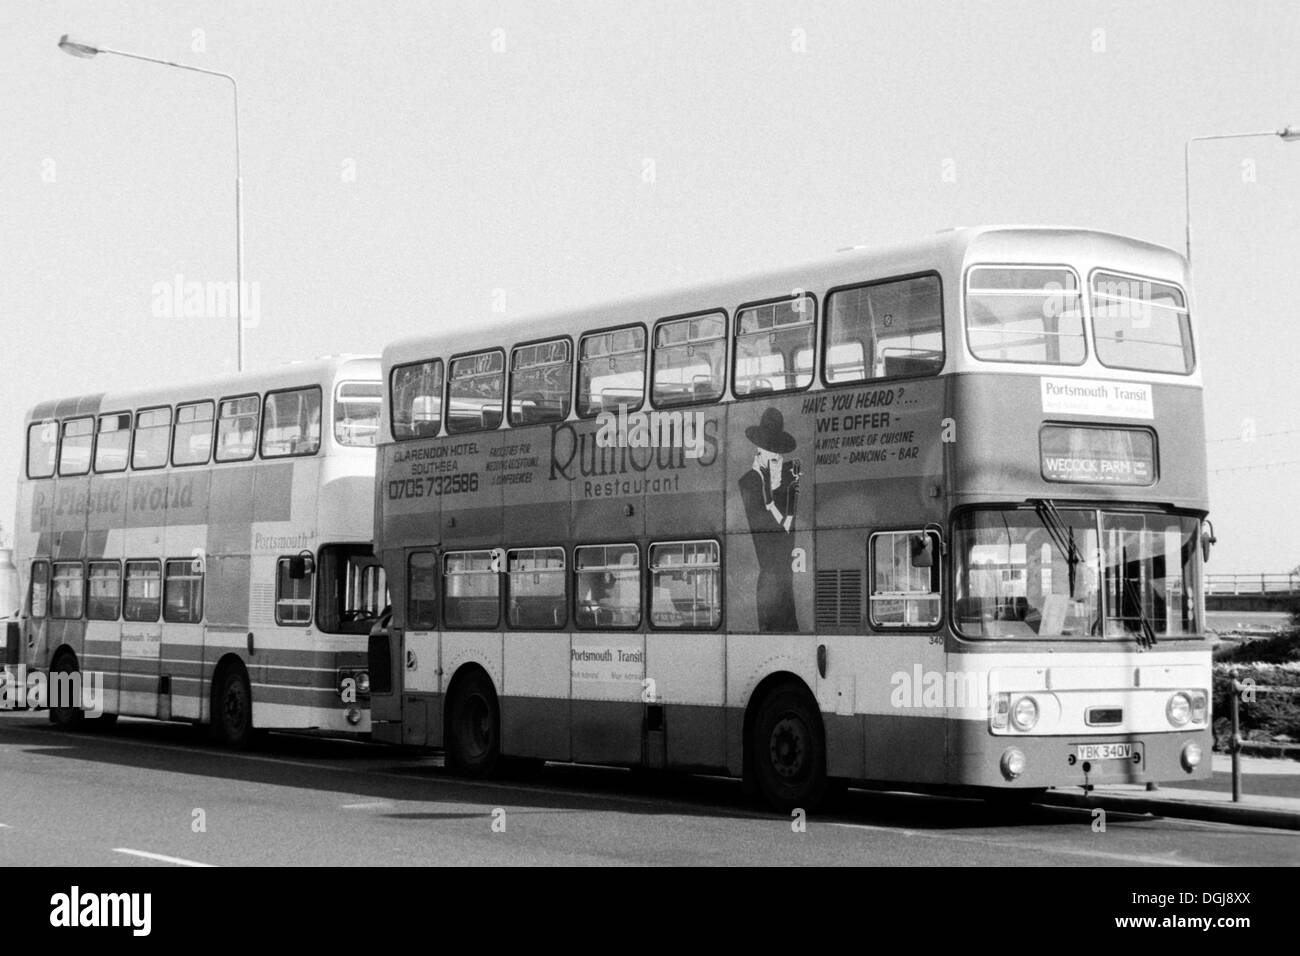 Vieux style double decker bus dans southsea uk administré par portsmouth en commun sous le nom de l'amiral rouge 1990 Banque D'Images